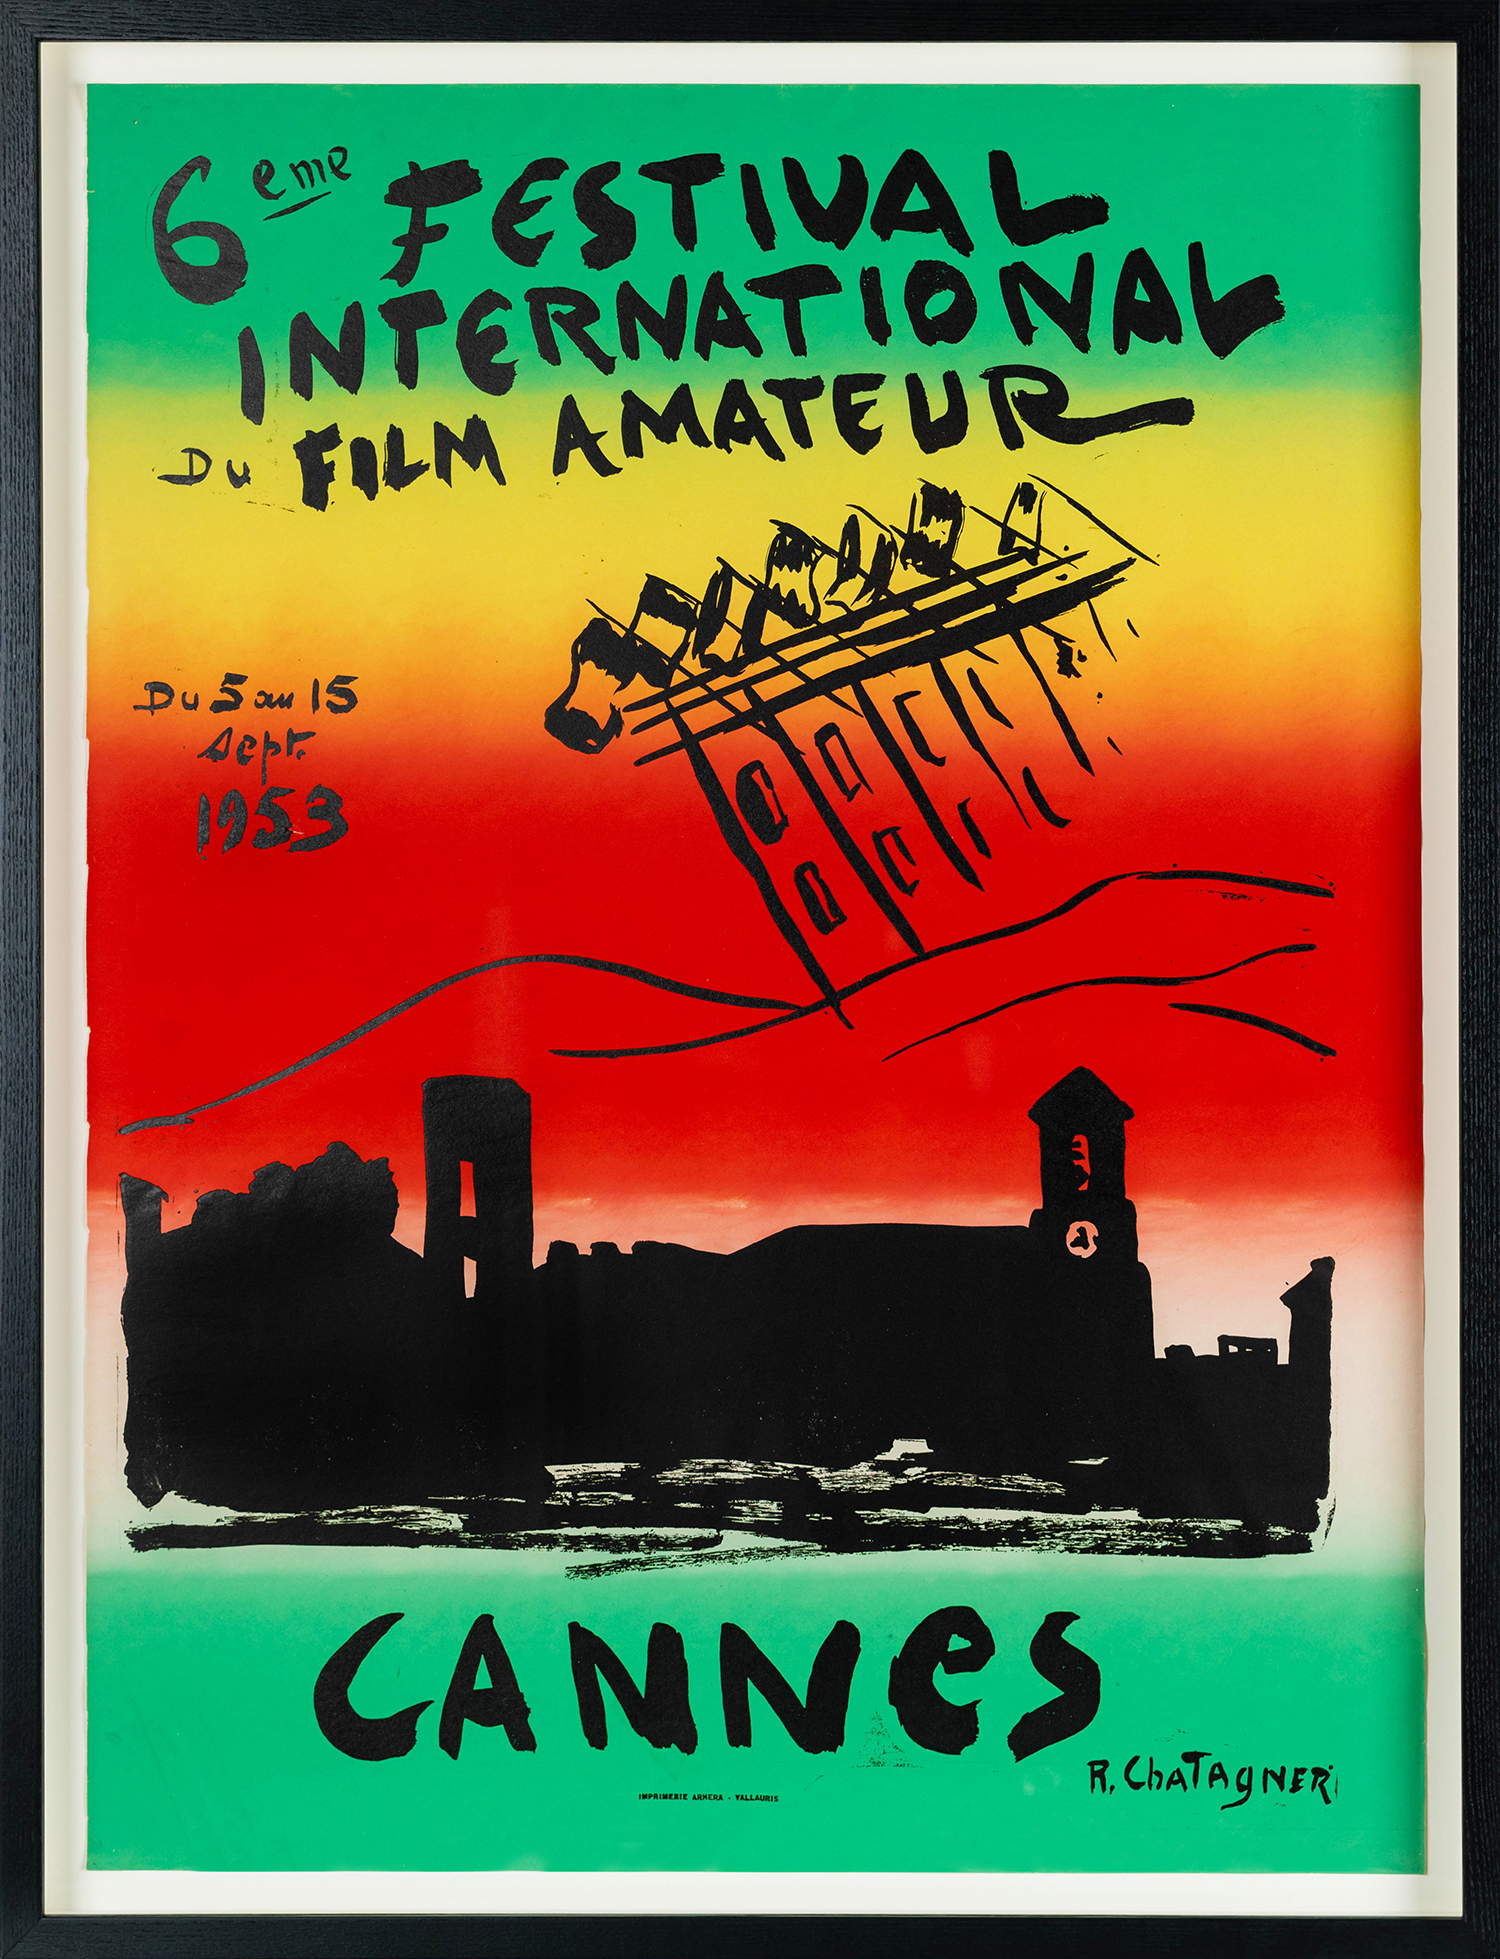 Cannes Festival International de Film Amateur, 1953